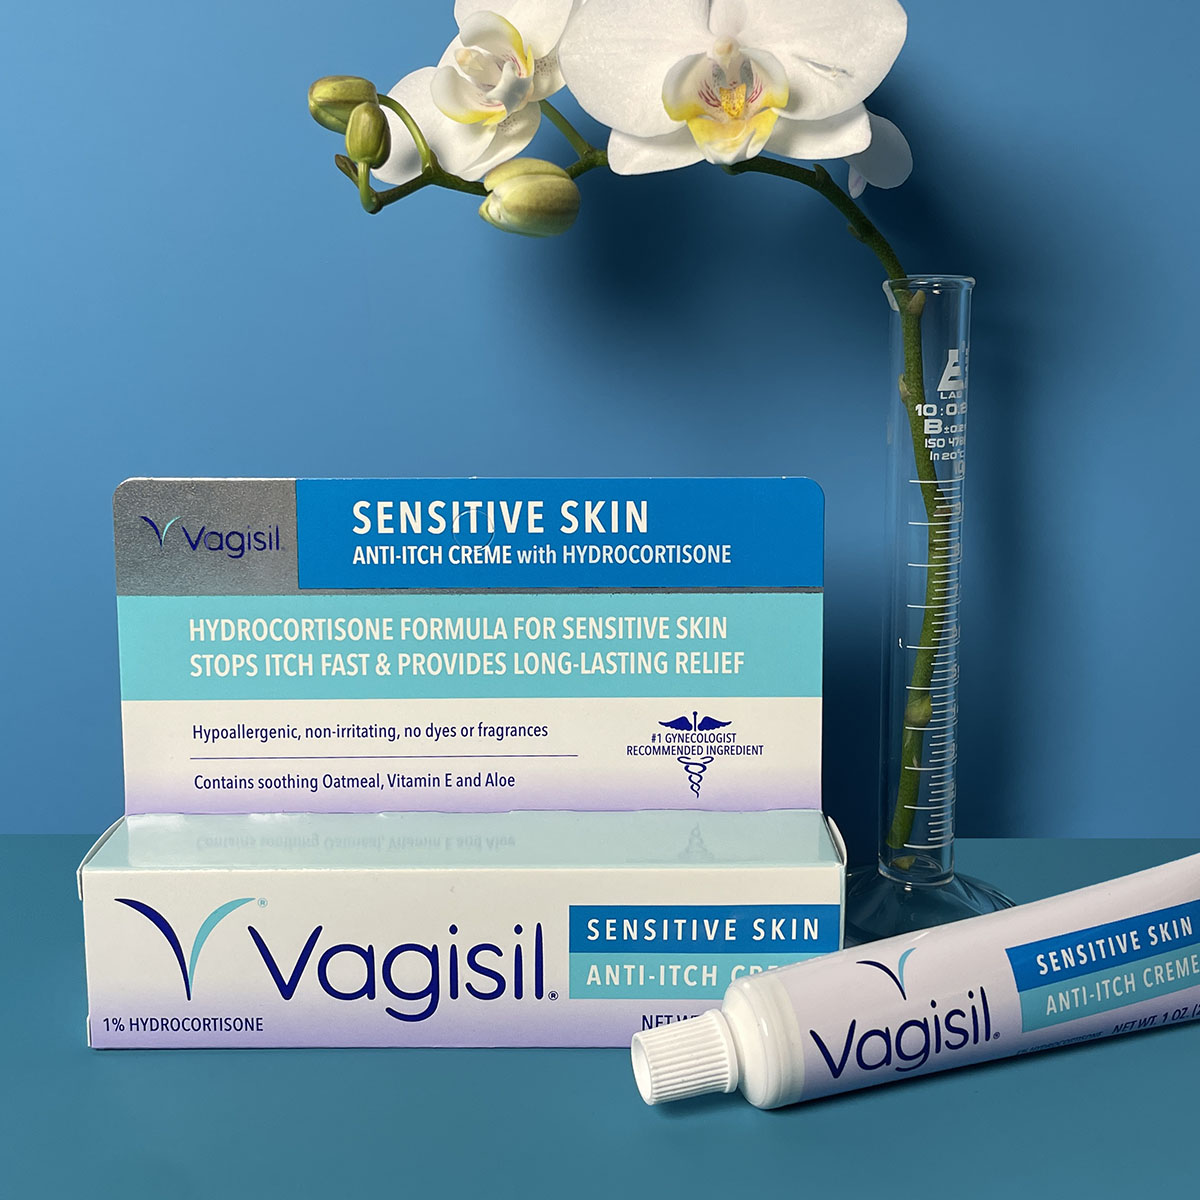 Vagisil Maximum Strength Feminine Anti-Itch Cream for Women